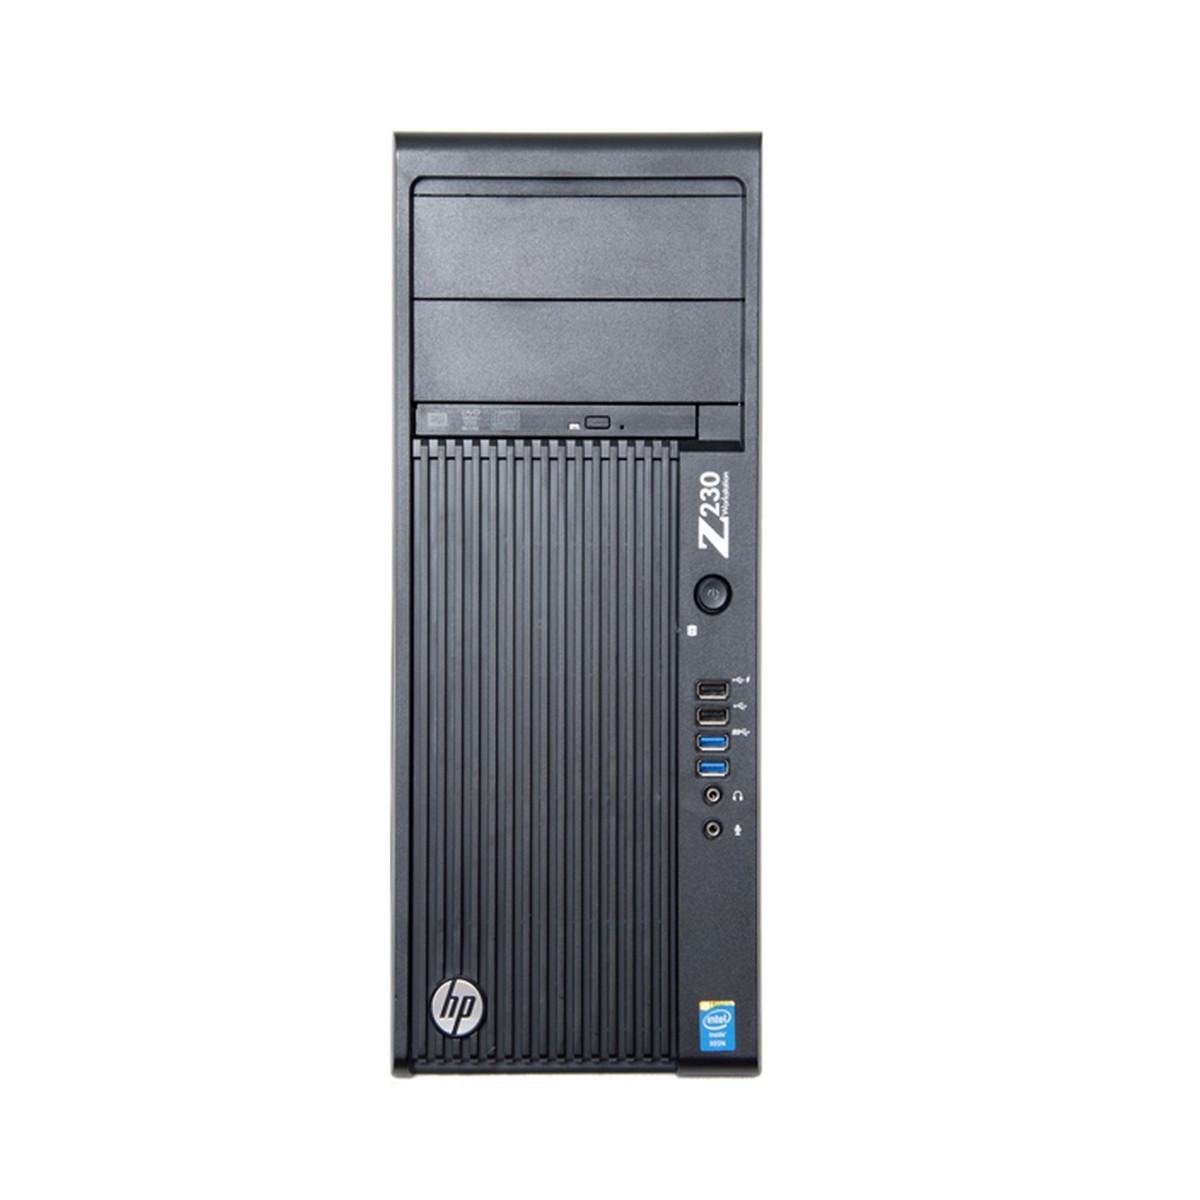 HP Z230 MT XEON E3-1245 v3 16GB 128GB SSD WIN10 PR